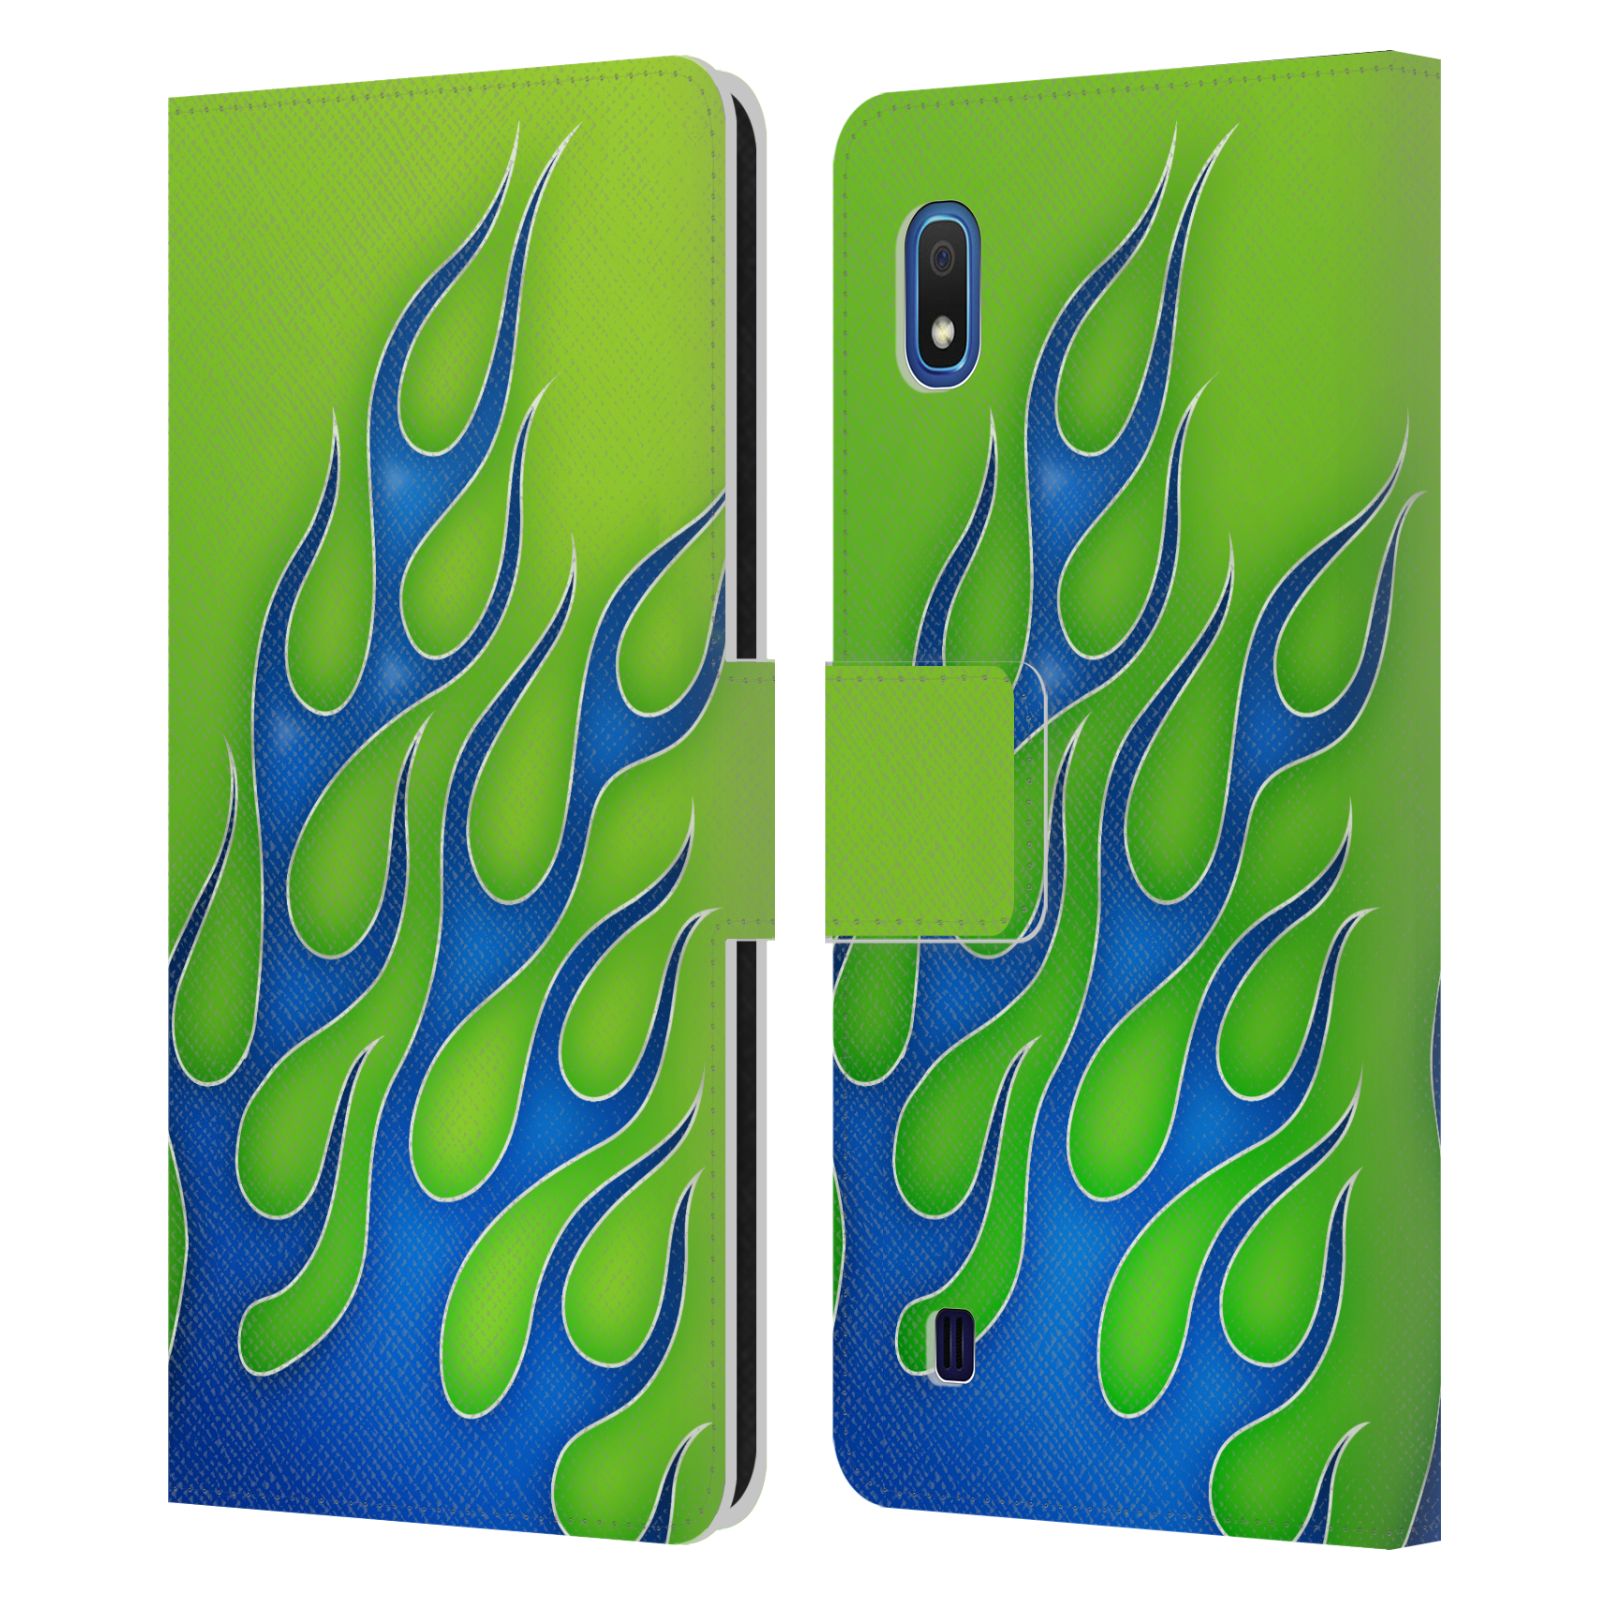 Pouzdro na mobil Samsung Galaxy A10 barevné ohnivé plameny modrá a zelená